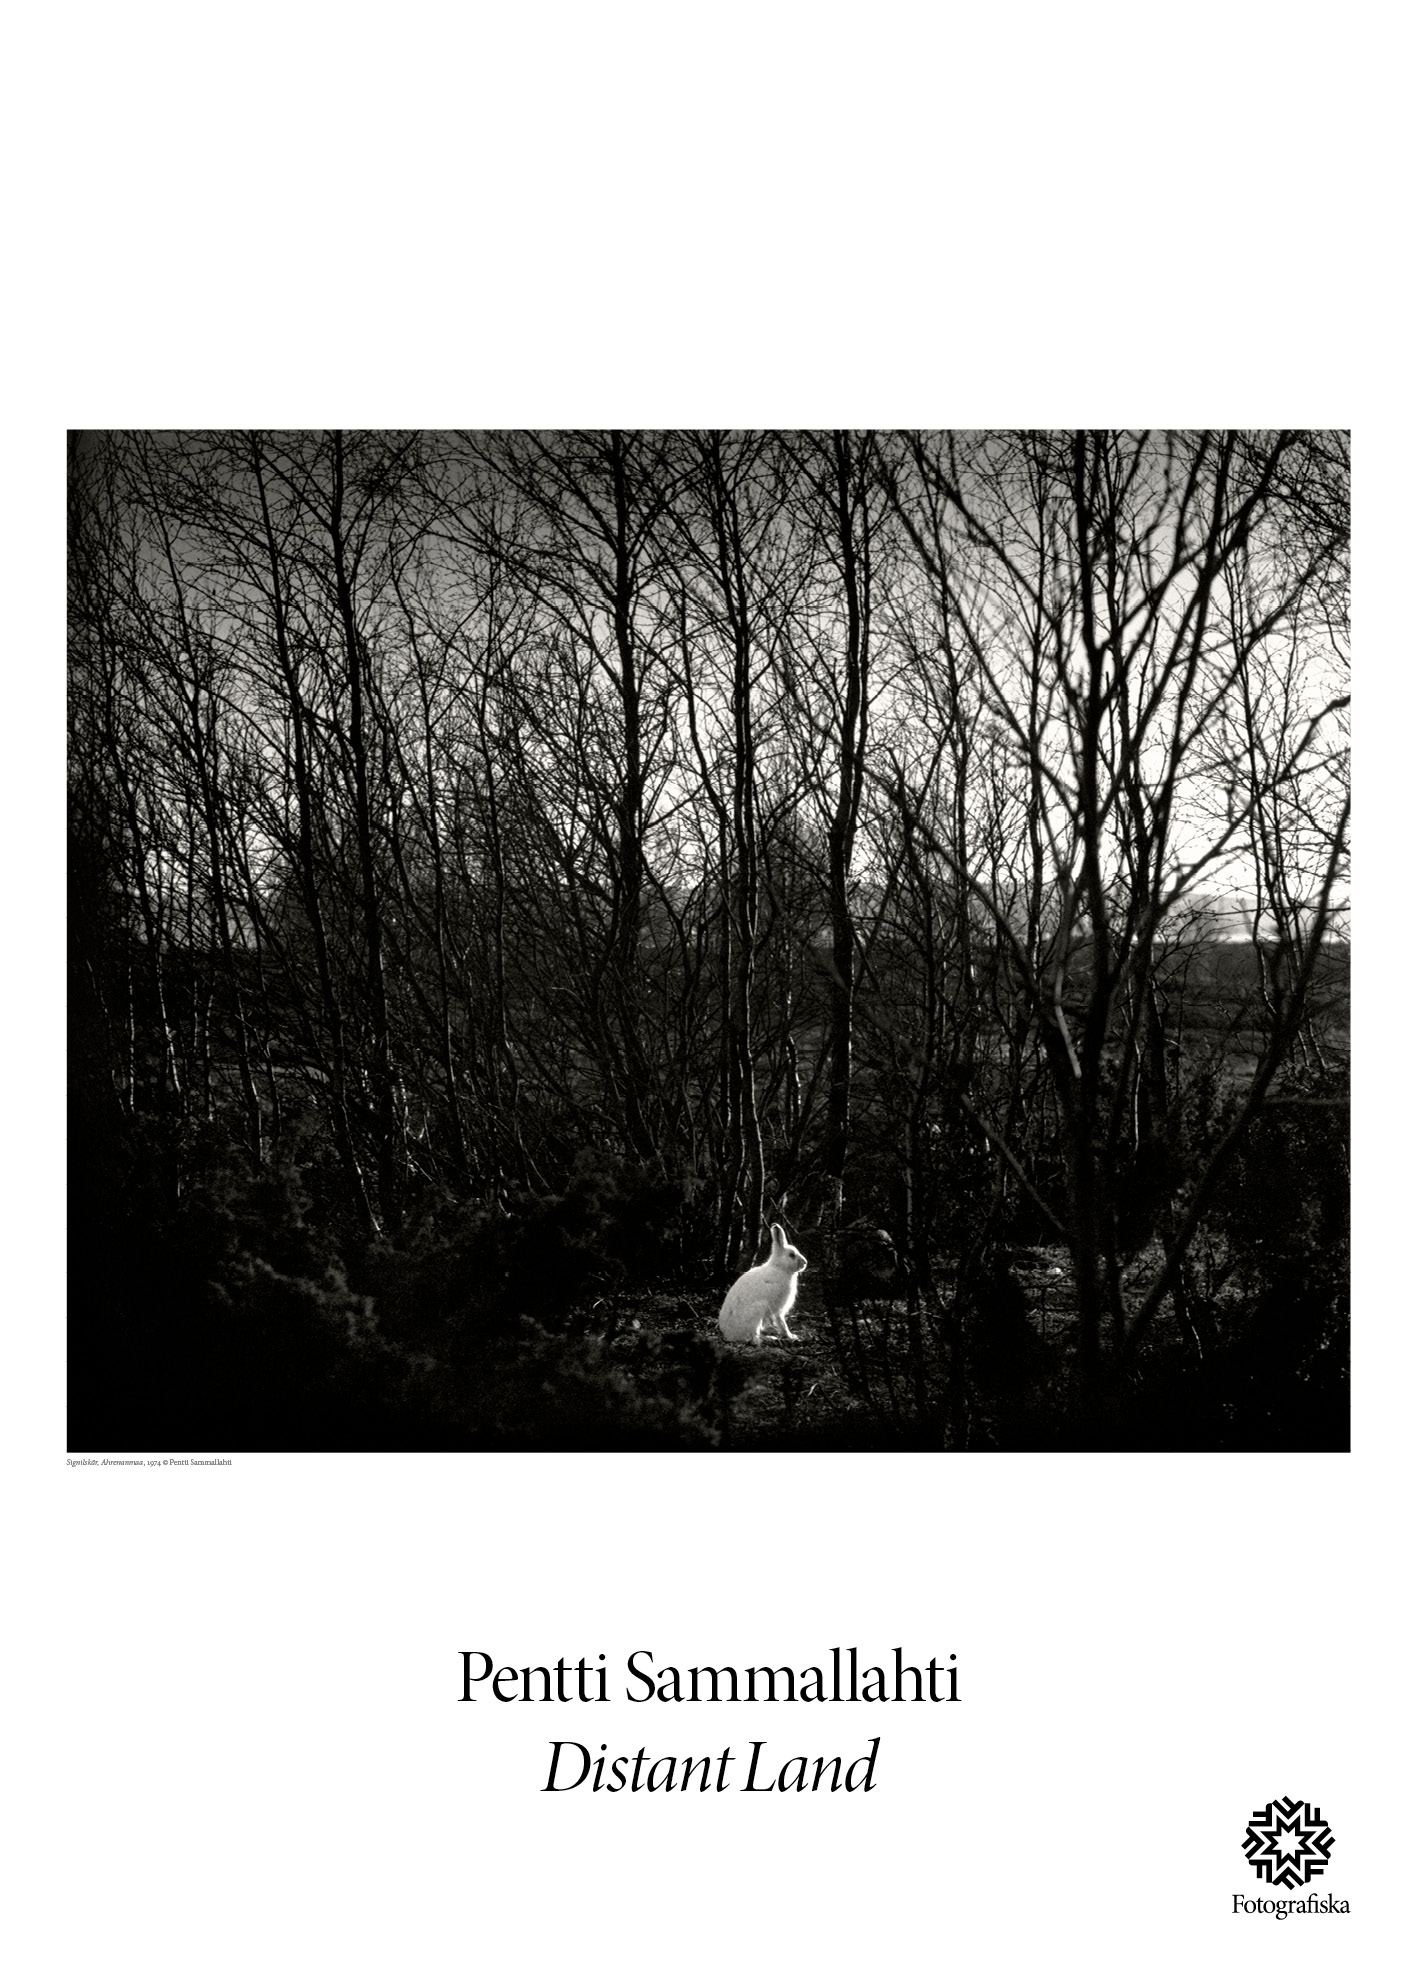 Pentti Sammallahti, White Rabbit #5744